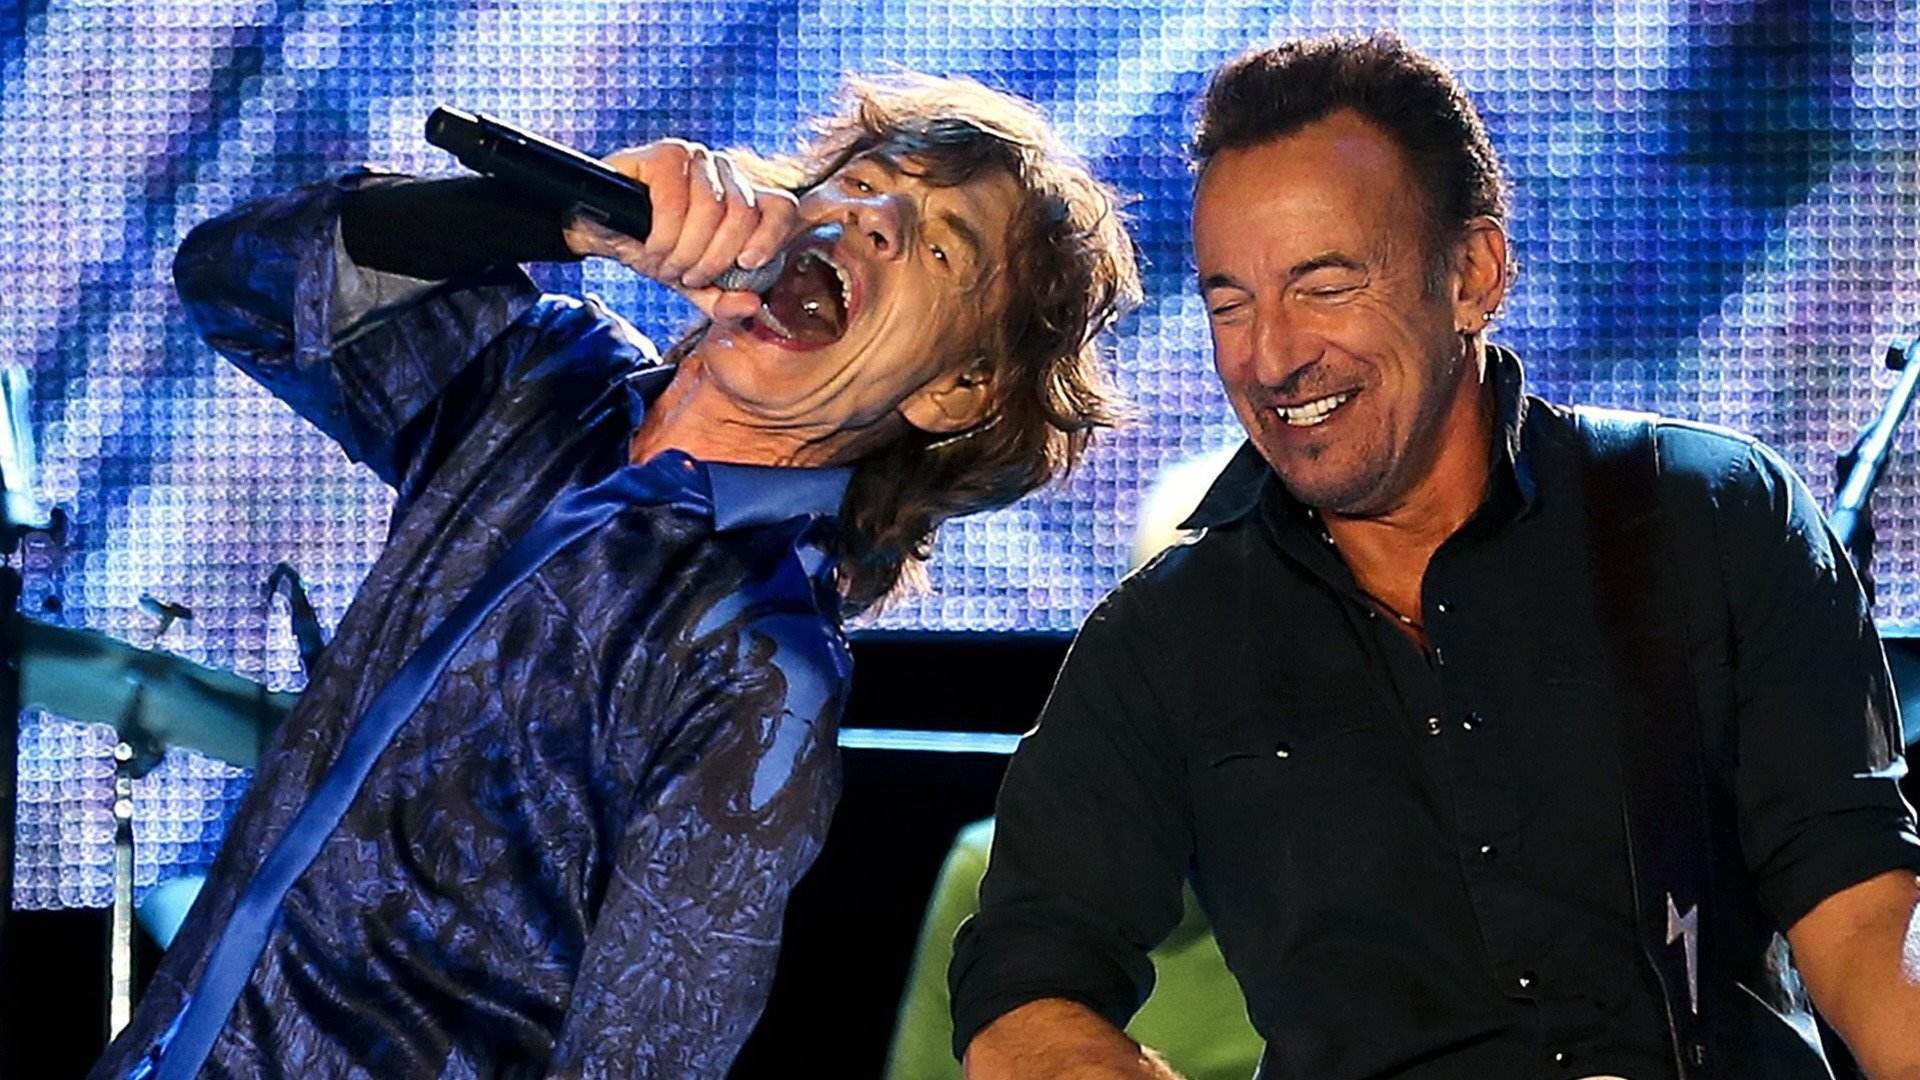 El rock and roll és més soft que mai: Mick Jagger, Springsteen i d'altres; ioga i bròcoli